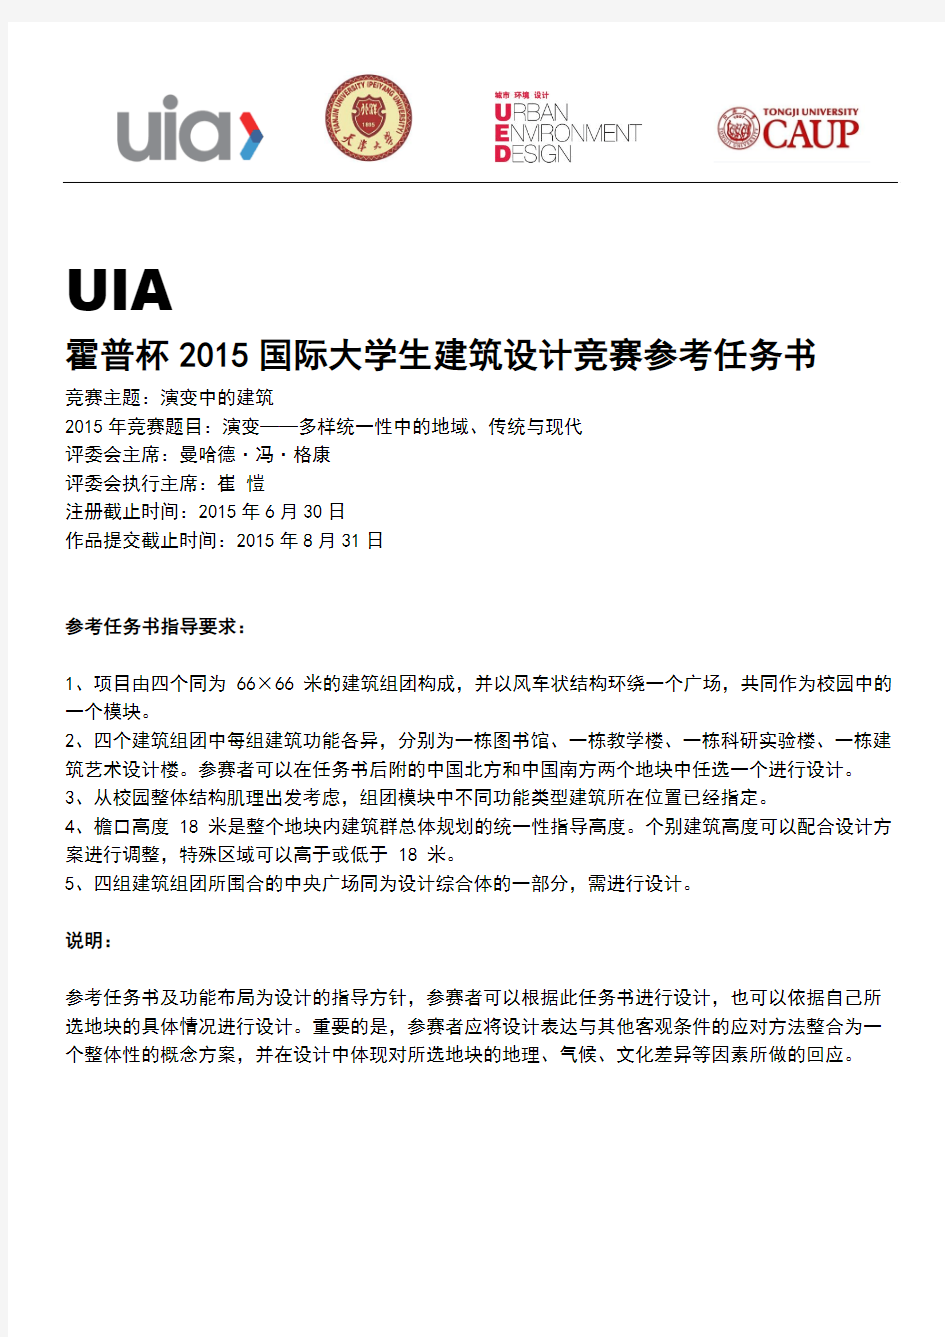 UIA-霍普杯2015国际大学生建筑设计竞赛参考任务书(中文)